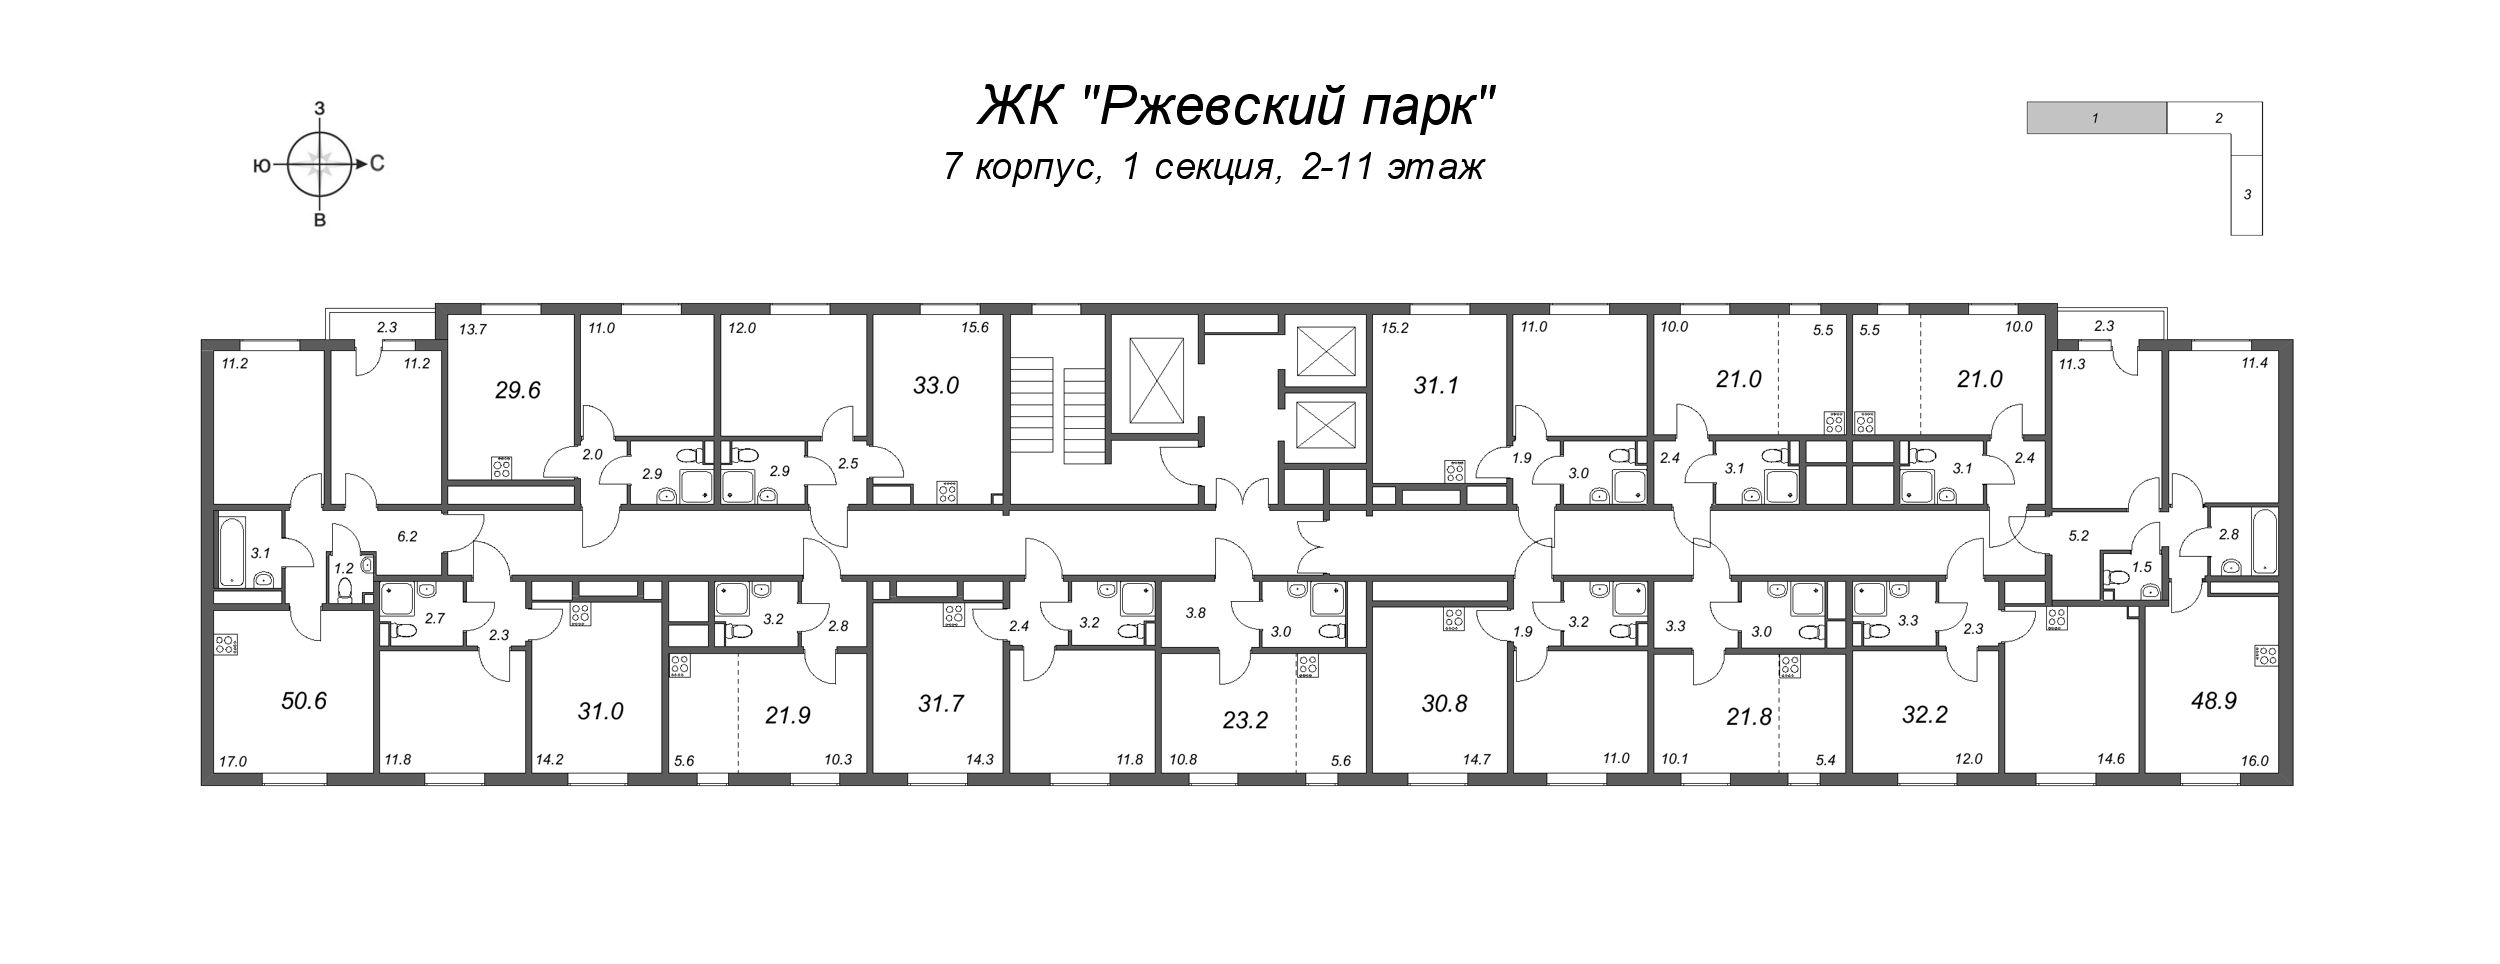 2-комнатная (Евро) квартира, 31.1 м² в ЖК "ЛСР. Ржевский парк" - планировка этажа